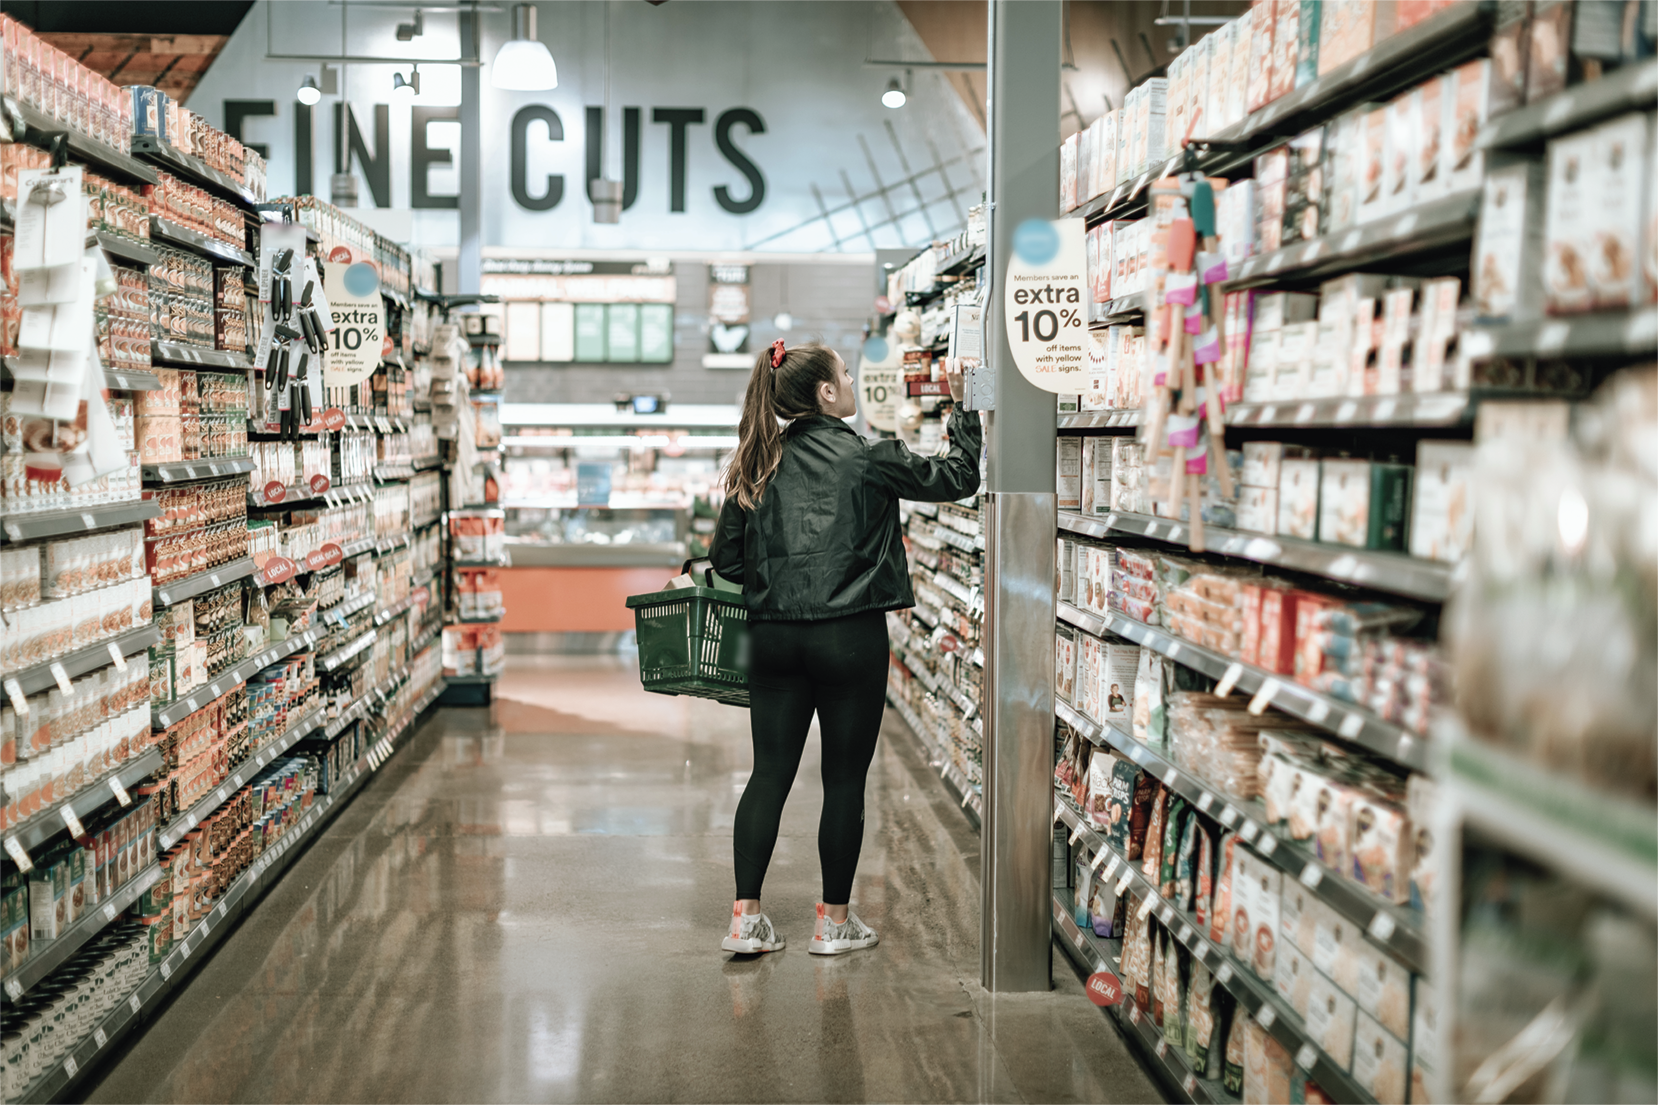 Fotografia. Uma mulher caminhando pelo corredor de um supermercado, olhando um produto. Ela carrega uma cesta em um dos braços.